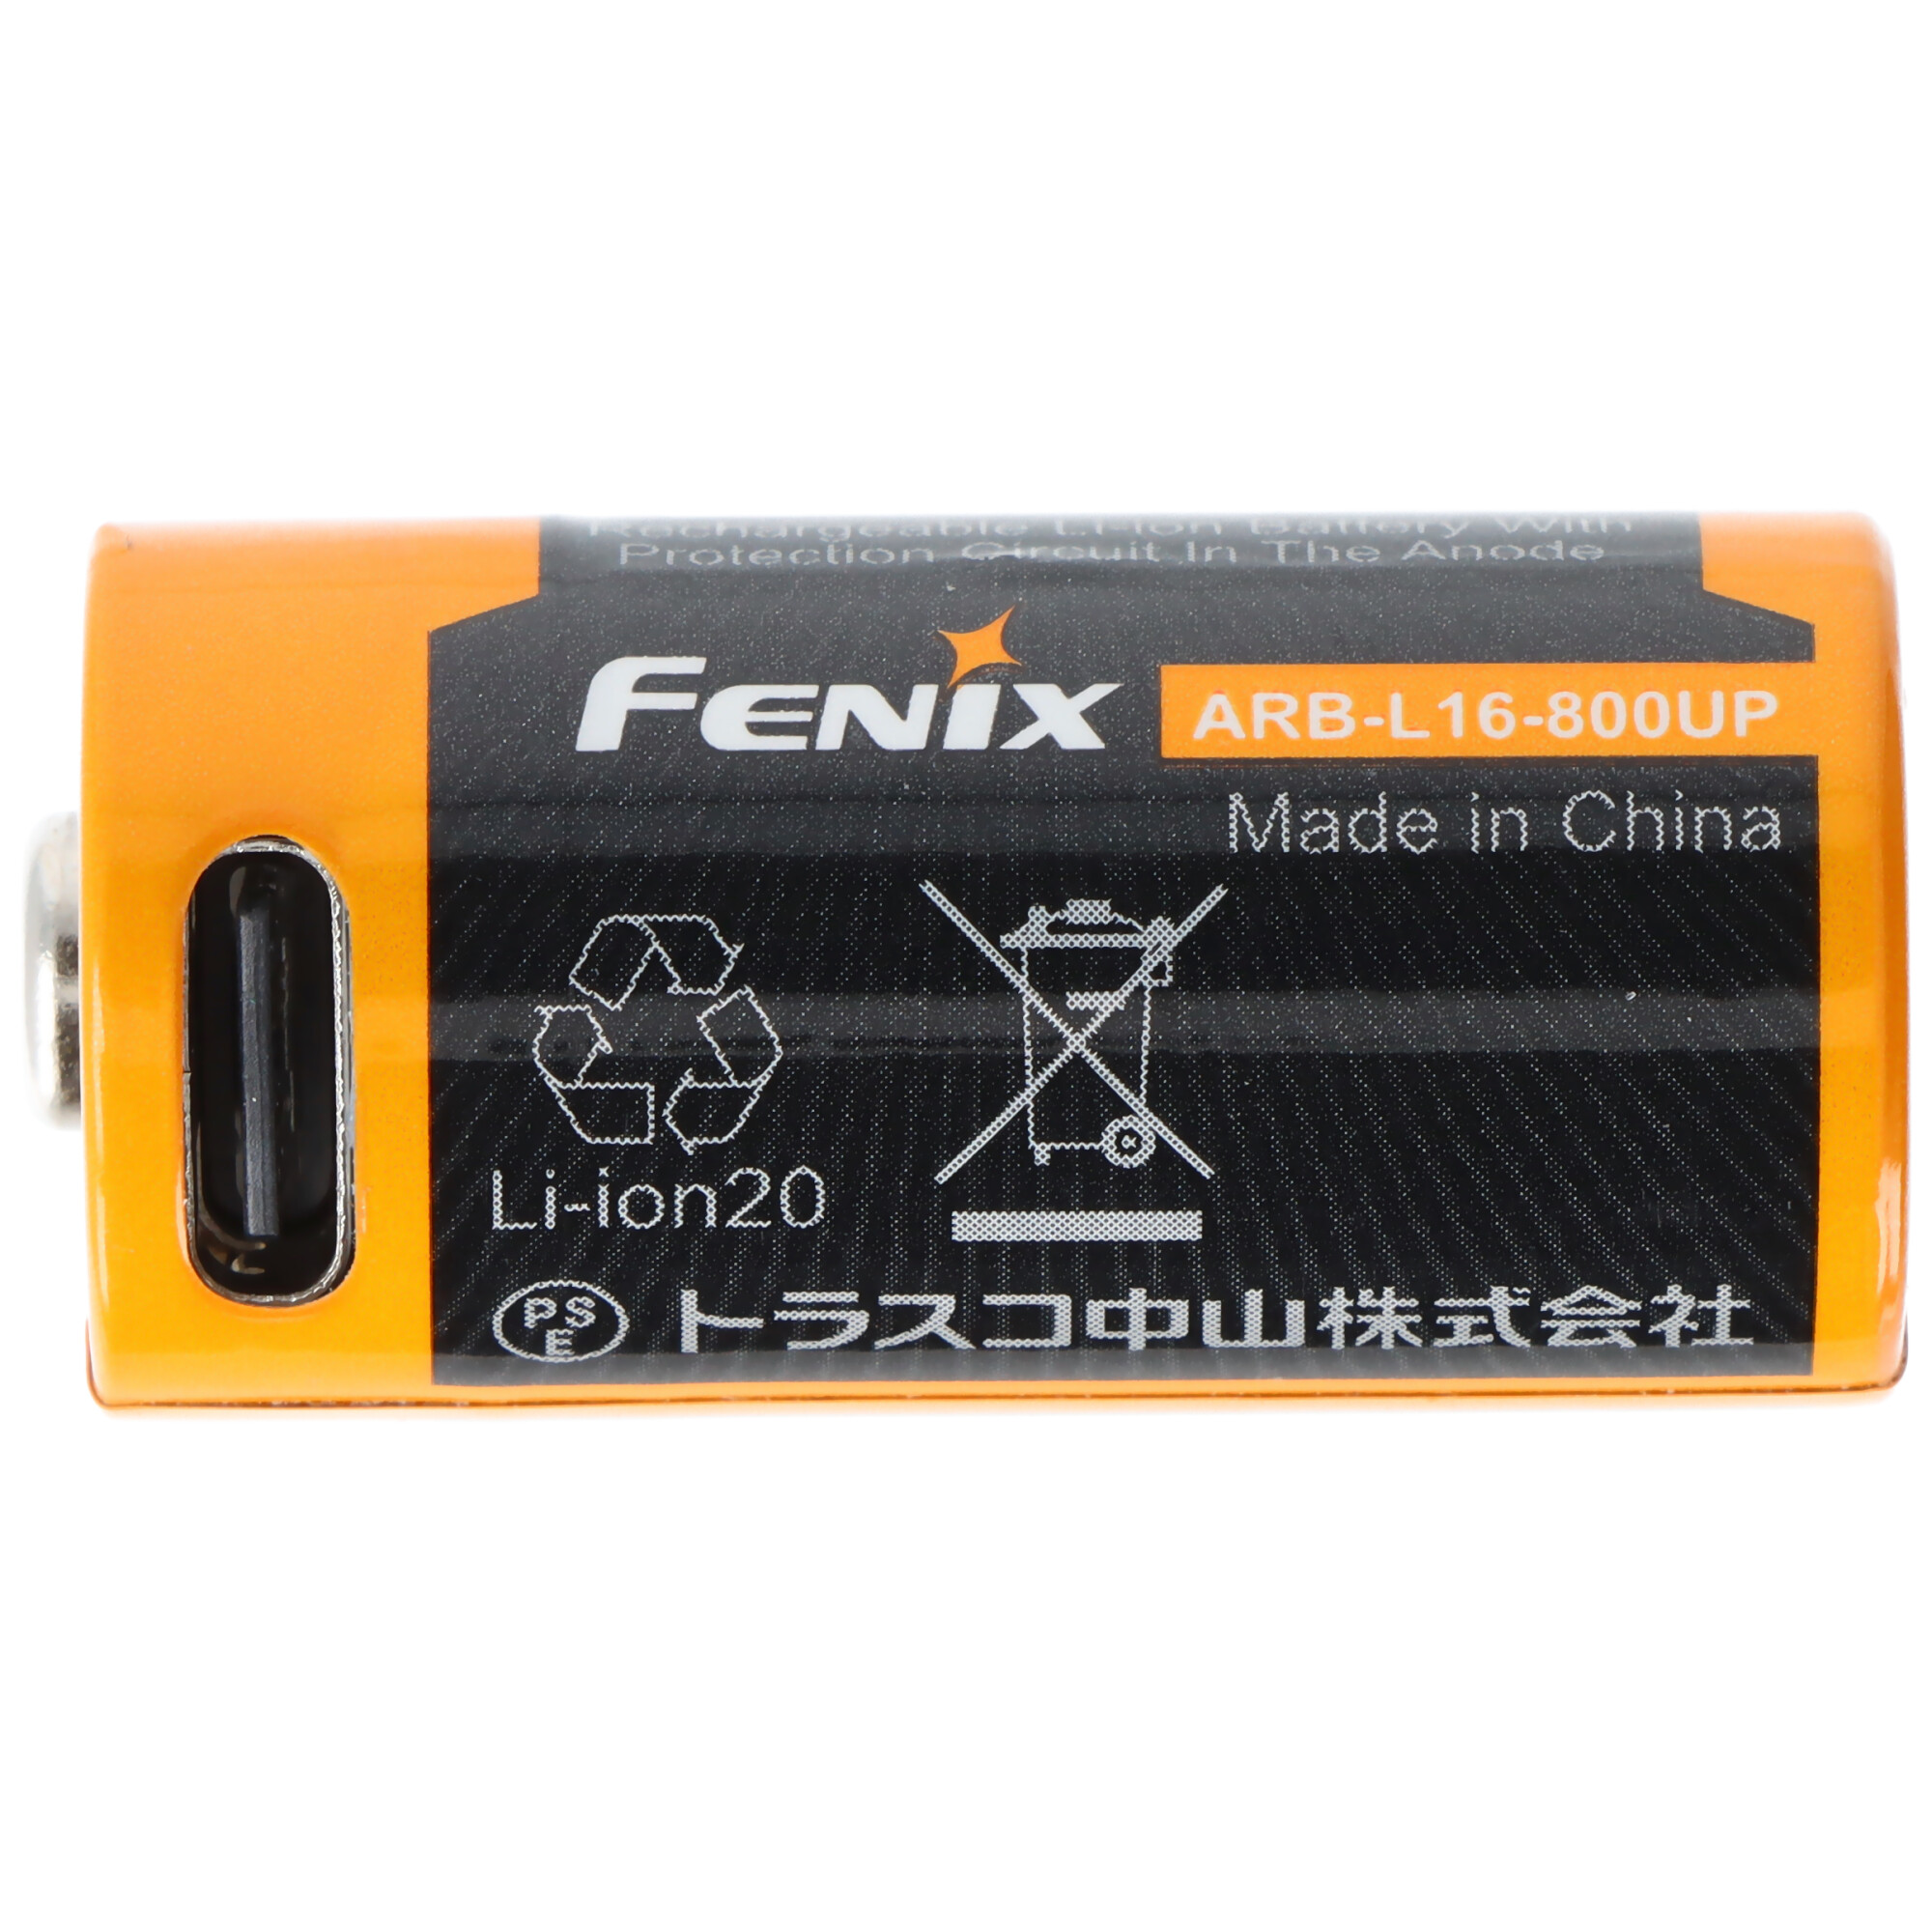 Fenix ARB-L16-800UP geschützer Li-Ion Akku 16340 RC123A, 800mAh, mit USB-C Ladebuchse